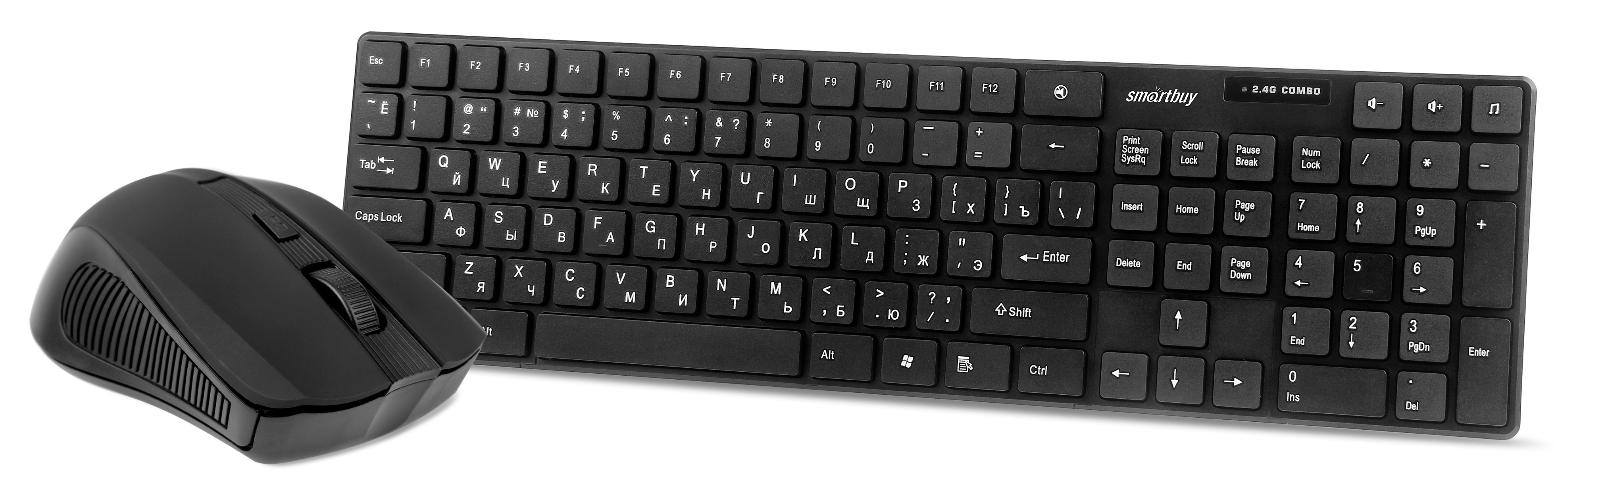 Клавиатура + мышь SmartBuy ONE 229352AG, беспроводная, USB, черный (SBC-229352AG-K)